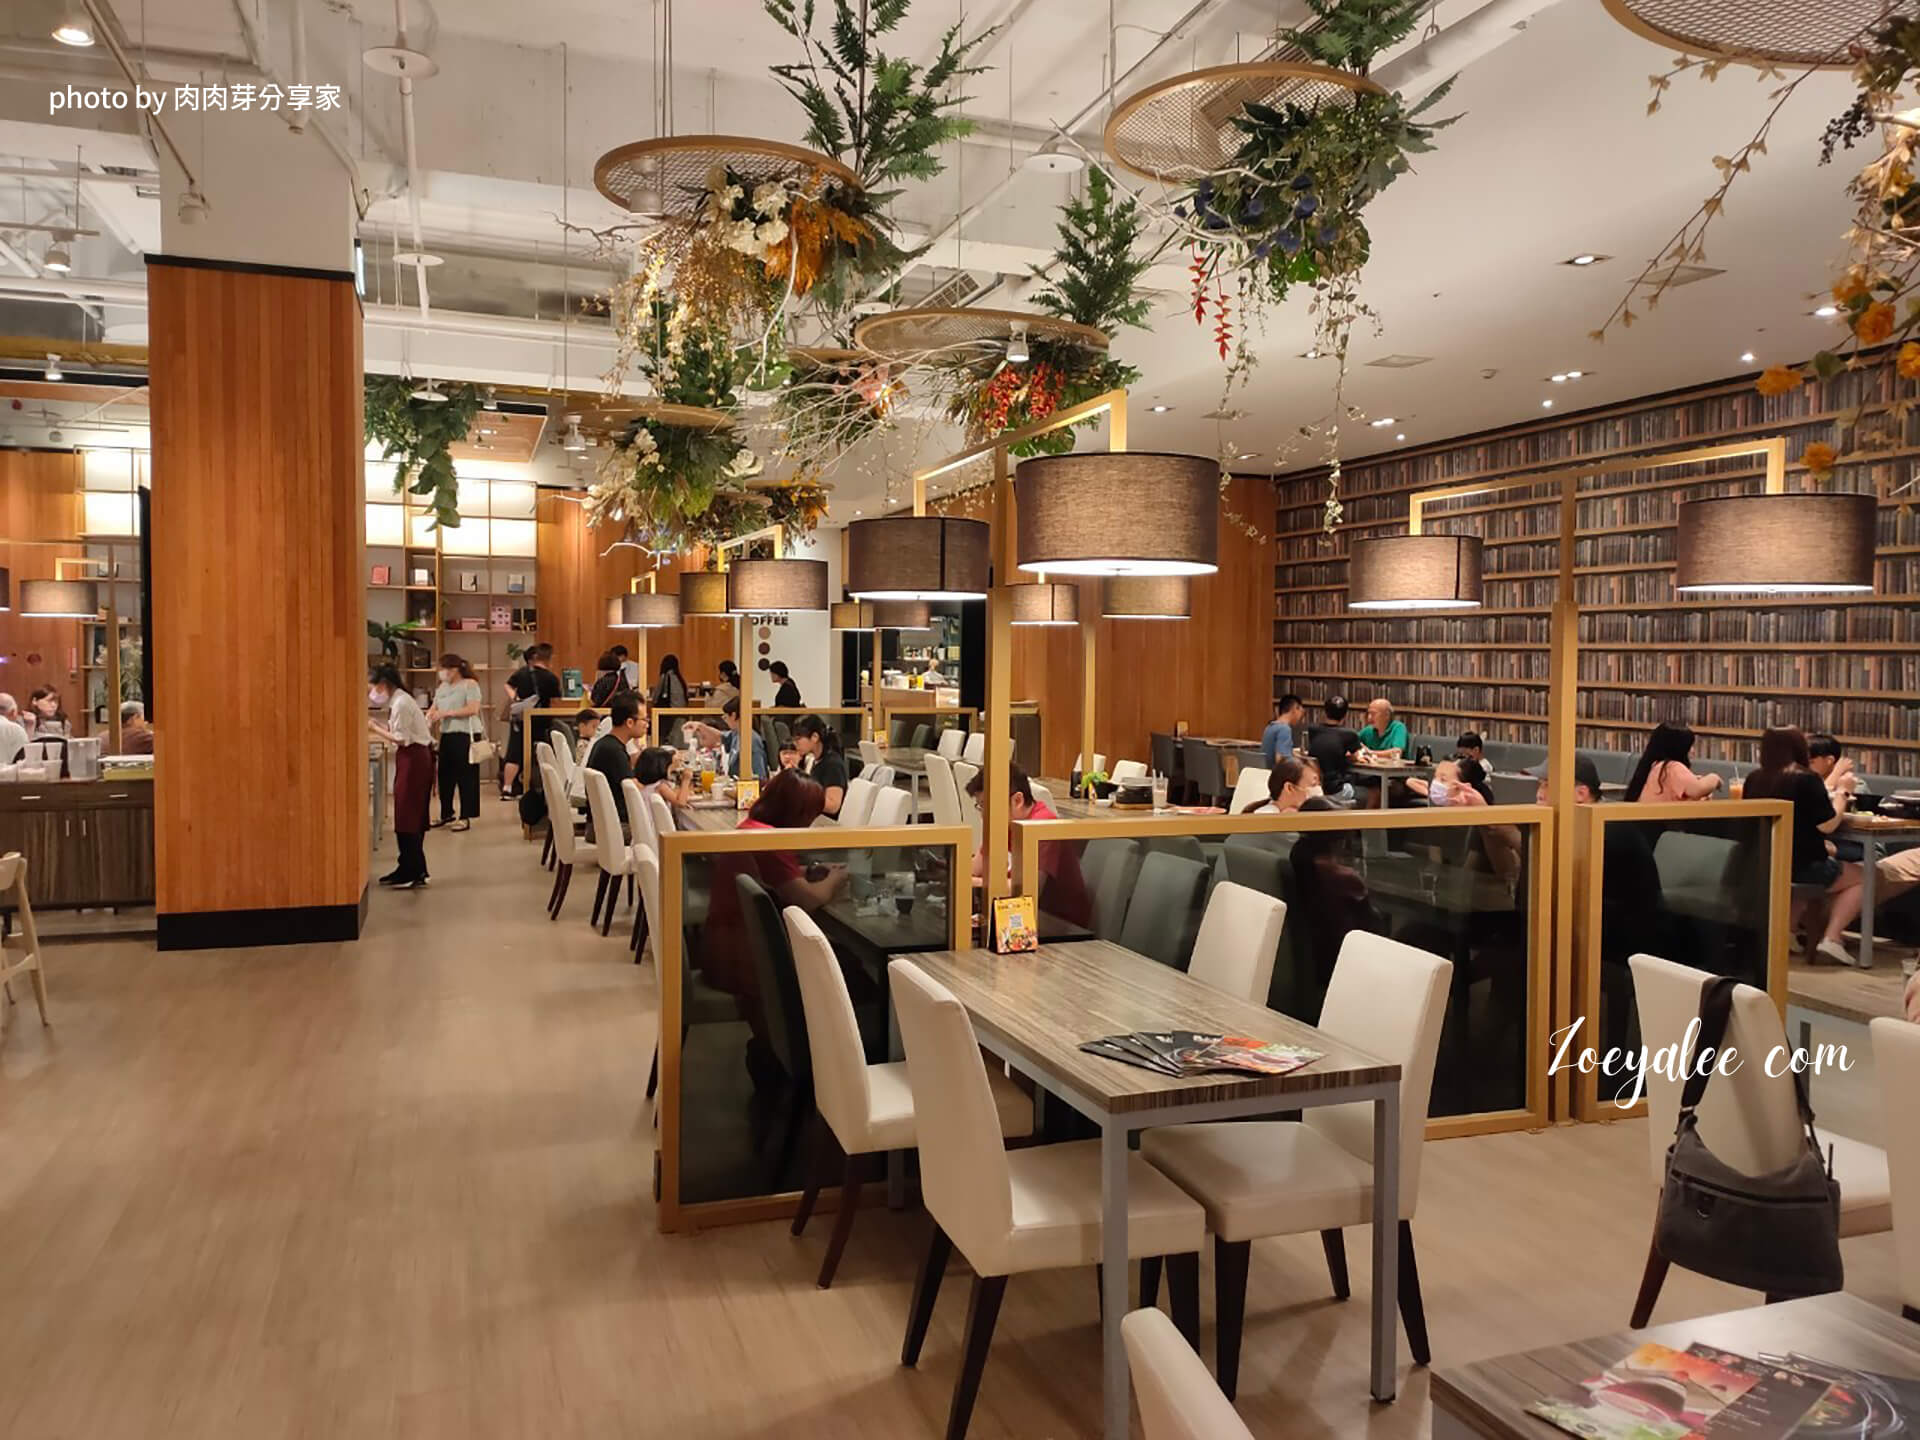 新竹竹北美食-異人館咖啡部屋靠模擬書牆壁紙座位區 肉肉芽分享家拍攝.